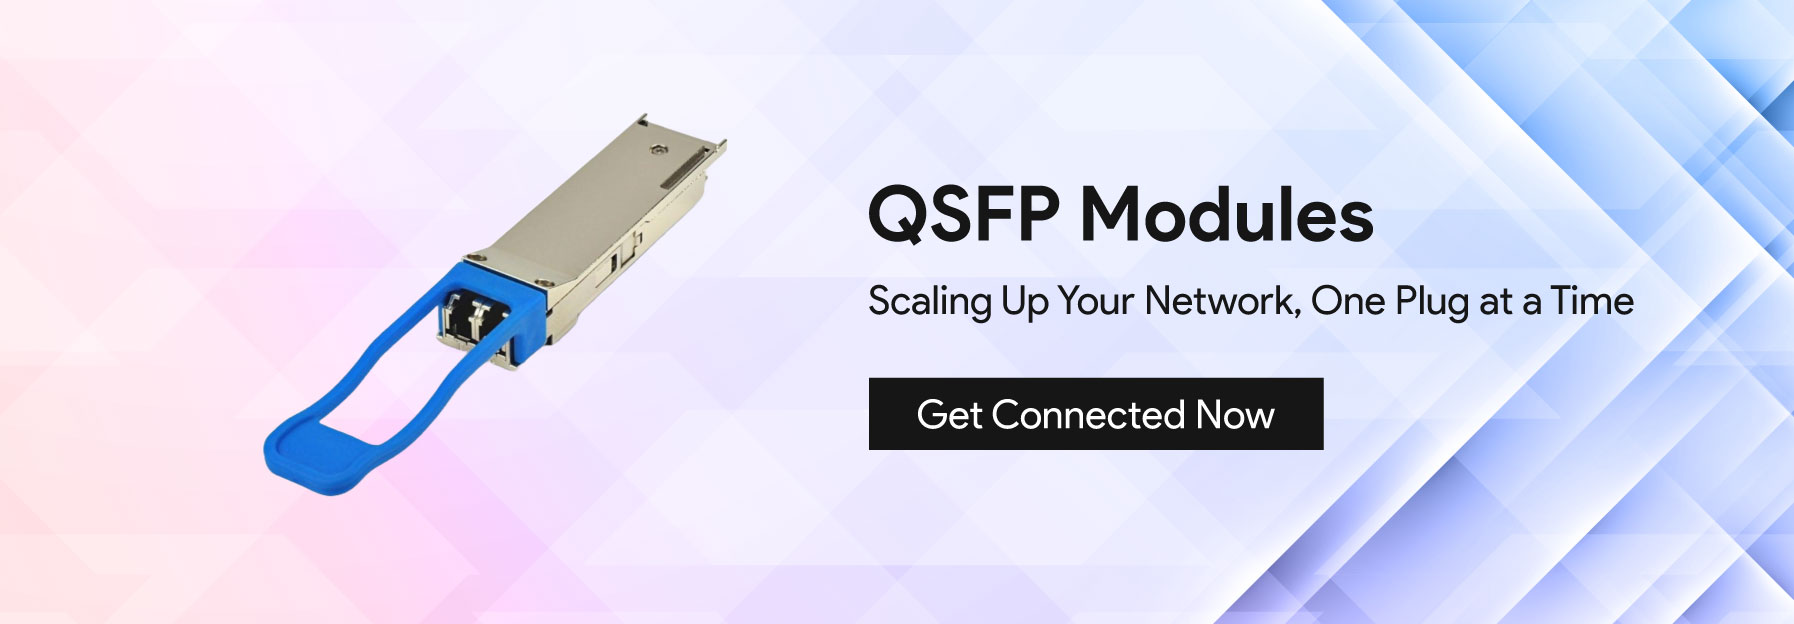 qsfp modules